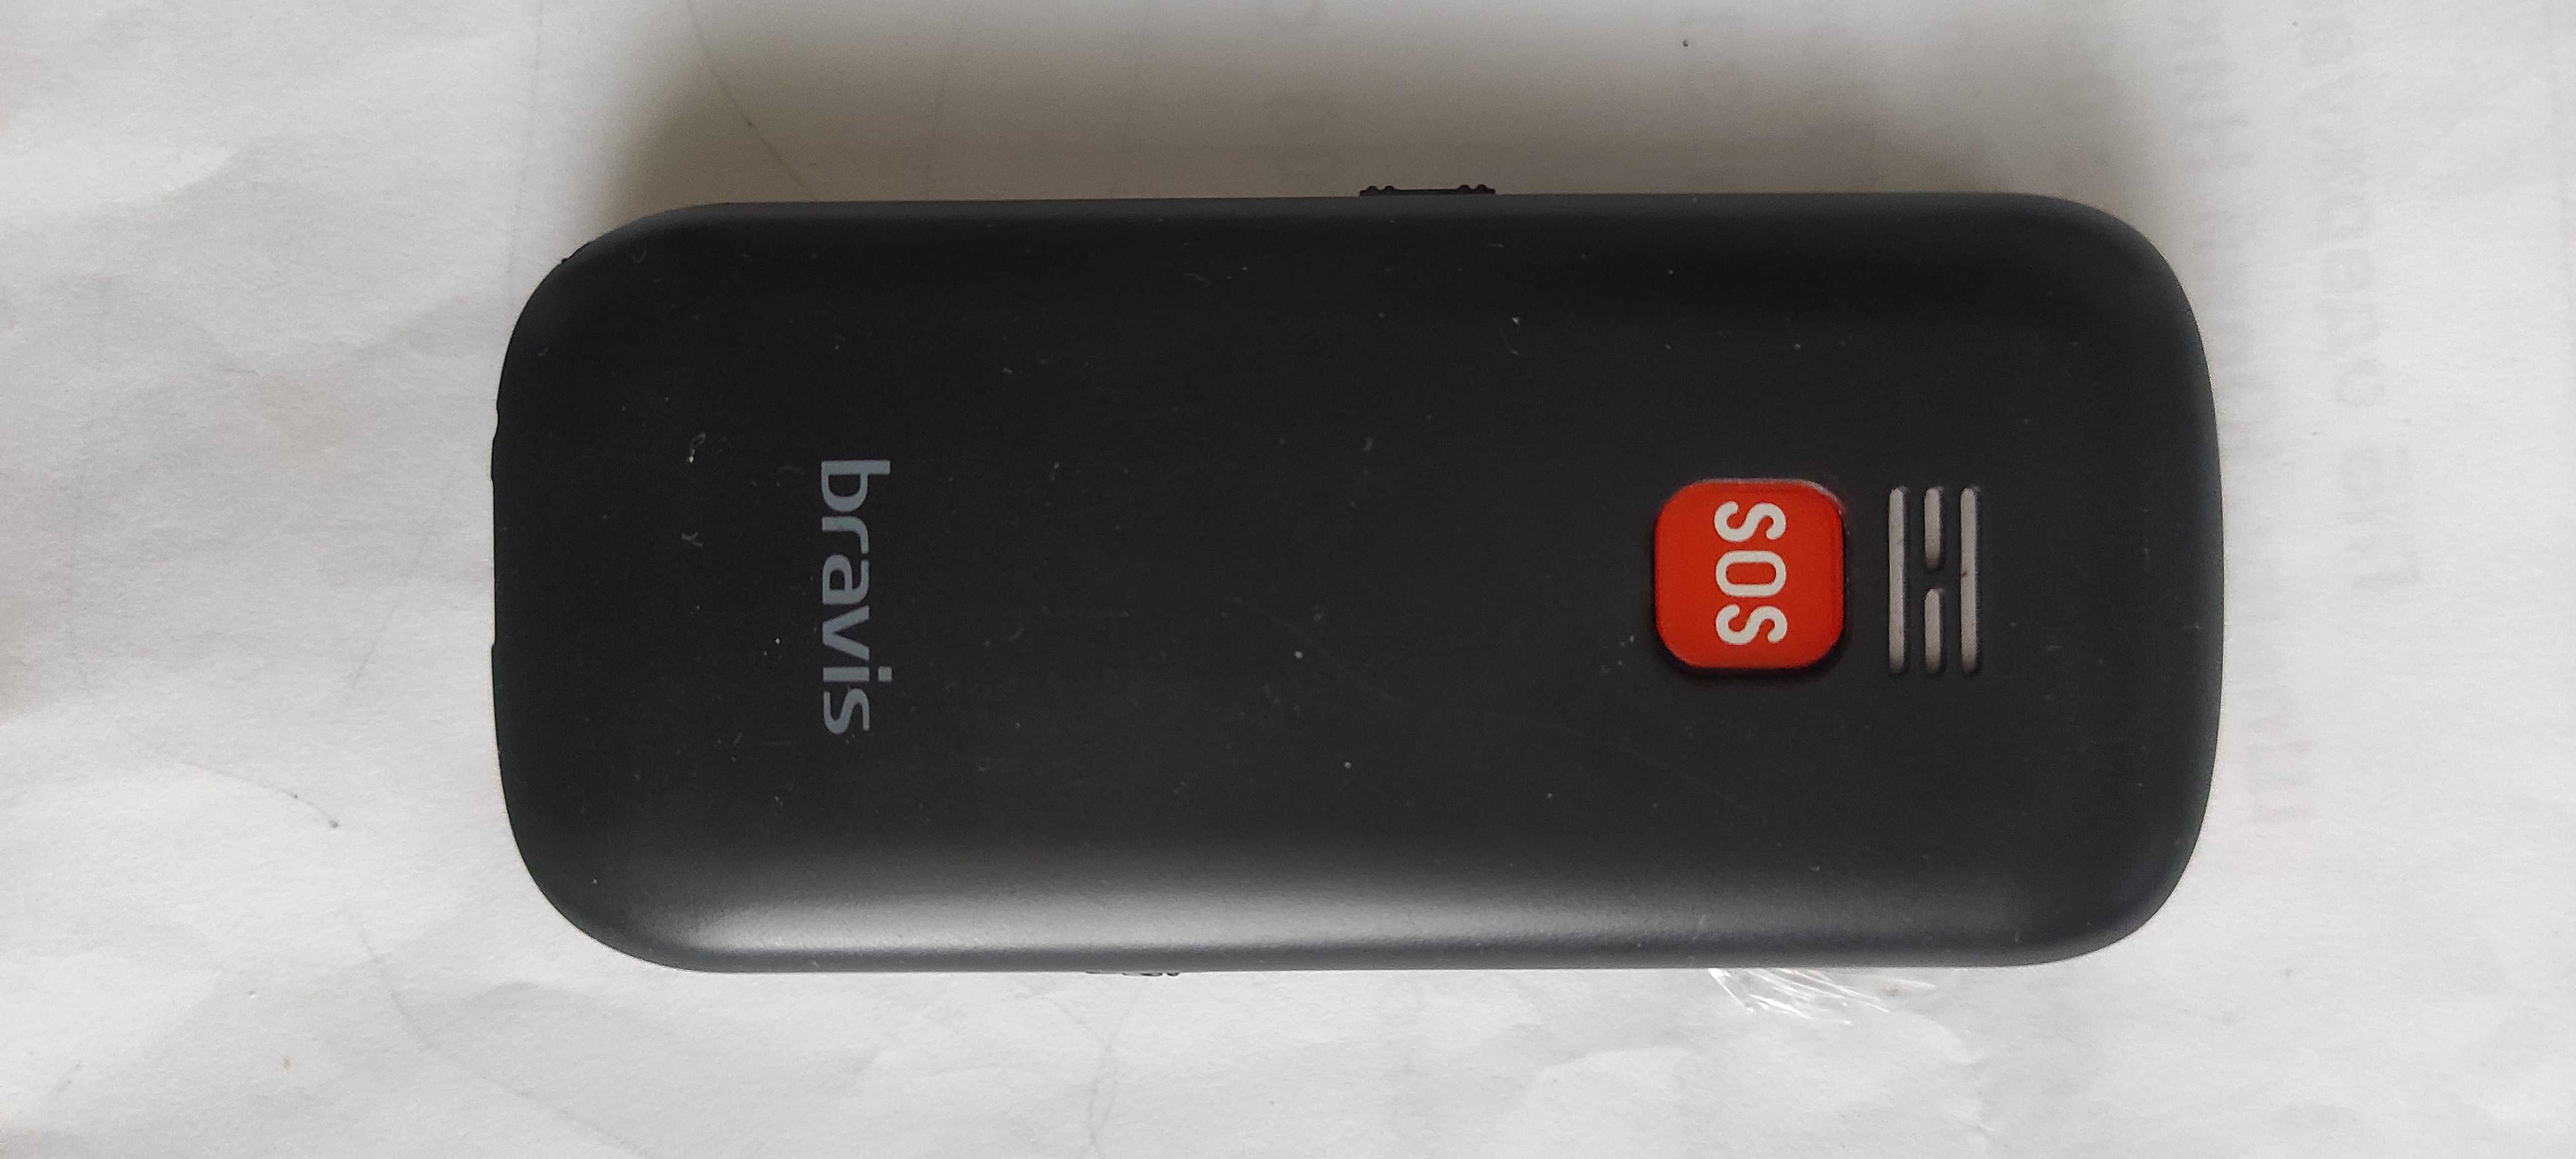 Bravis C181 Senior Dual Sim(бабофон)